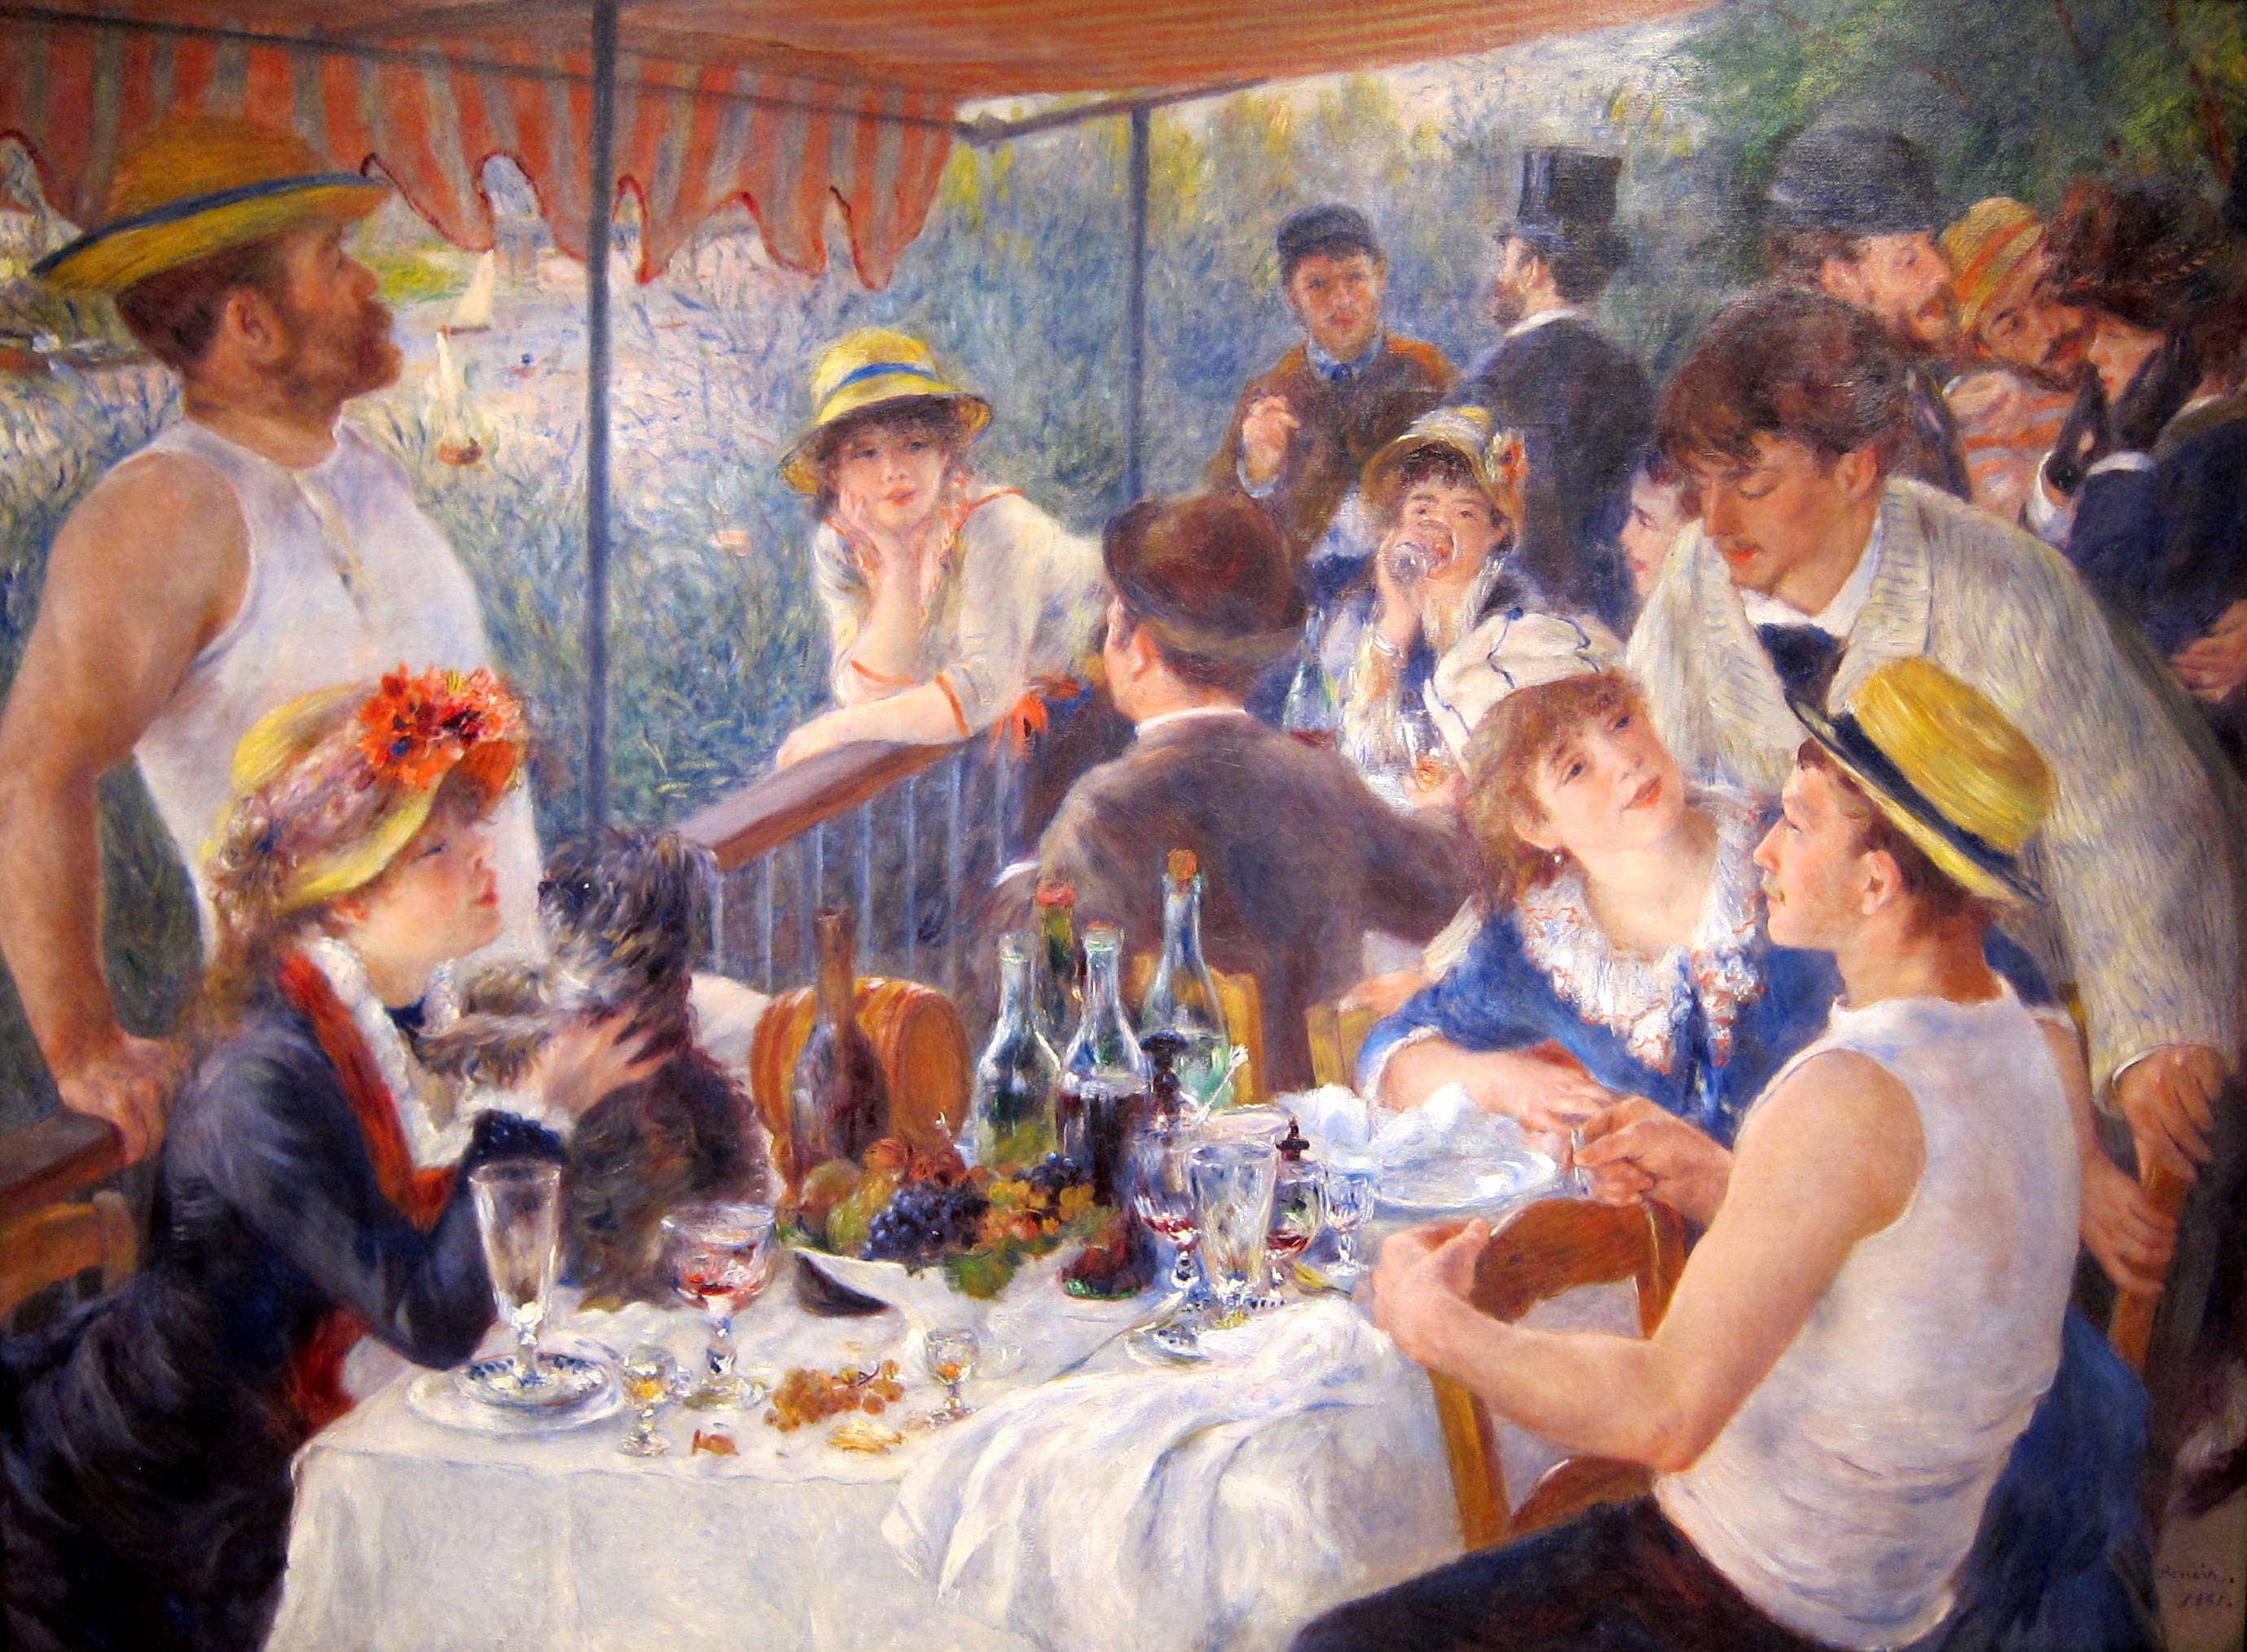 船上的午宴 by Pierre-Auguste Renoir - 1880 - 129.9 × 172.7 釐米 